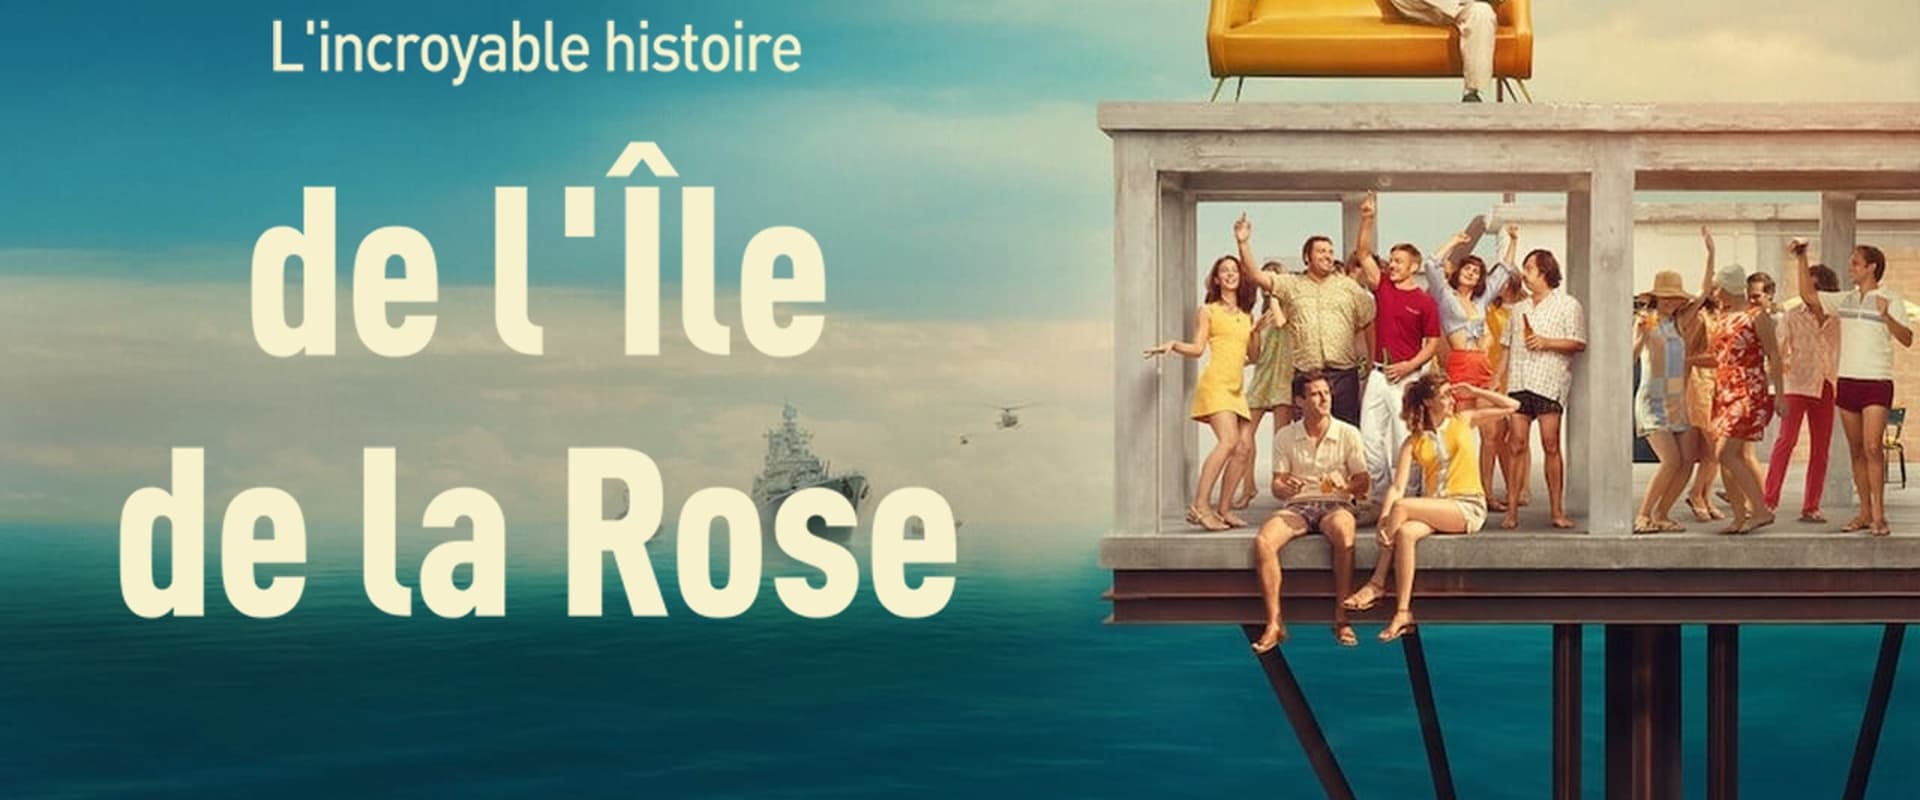 L'incredibile storia dell'isola delle rose